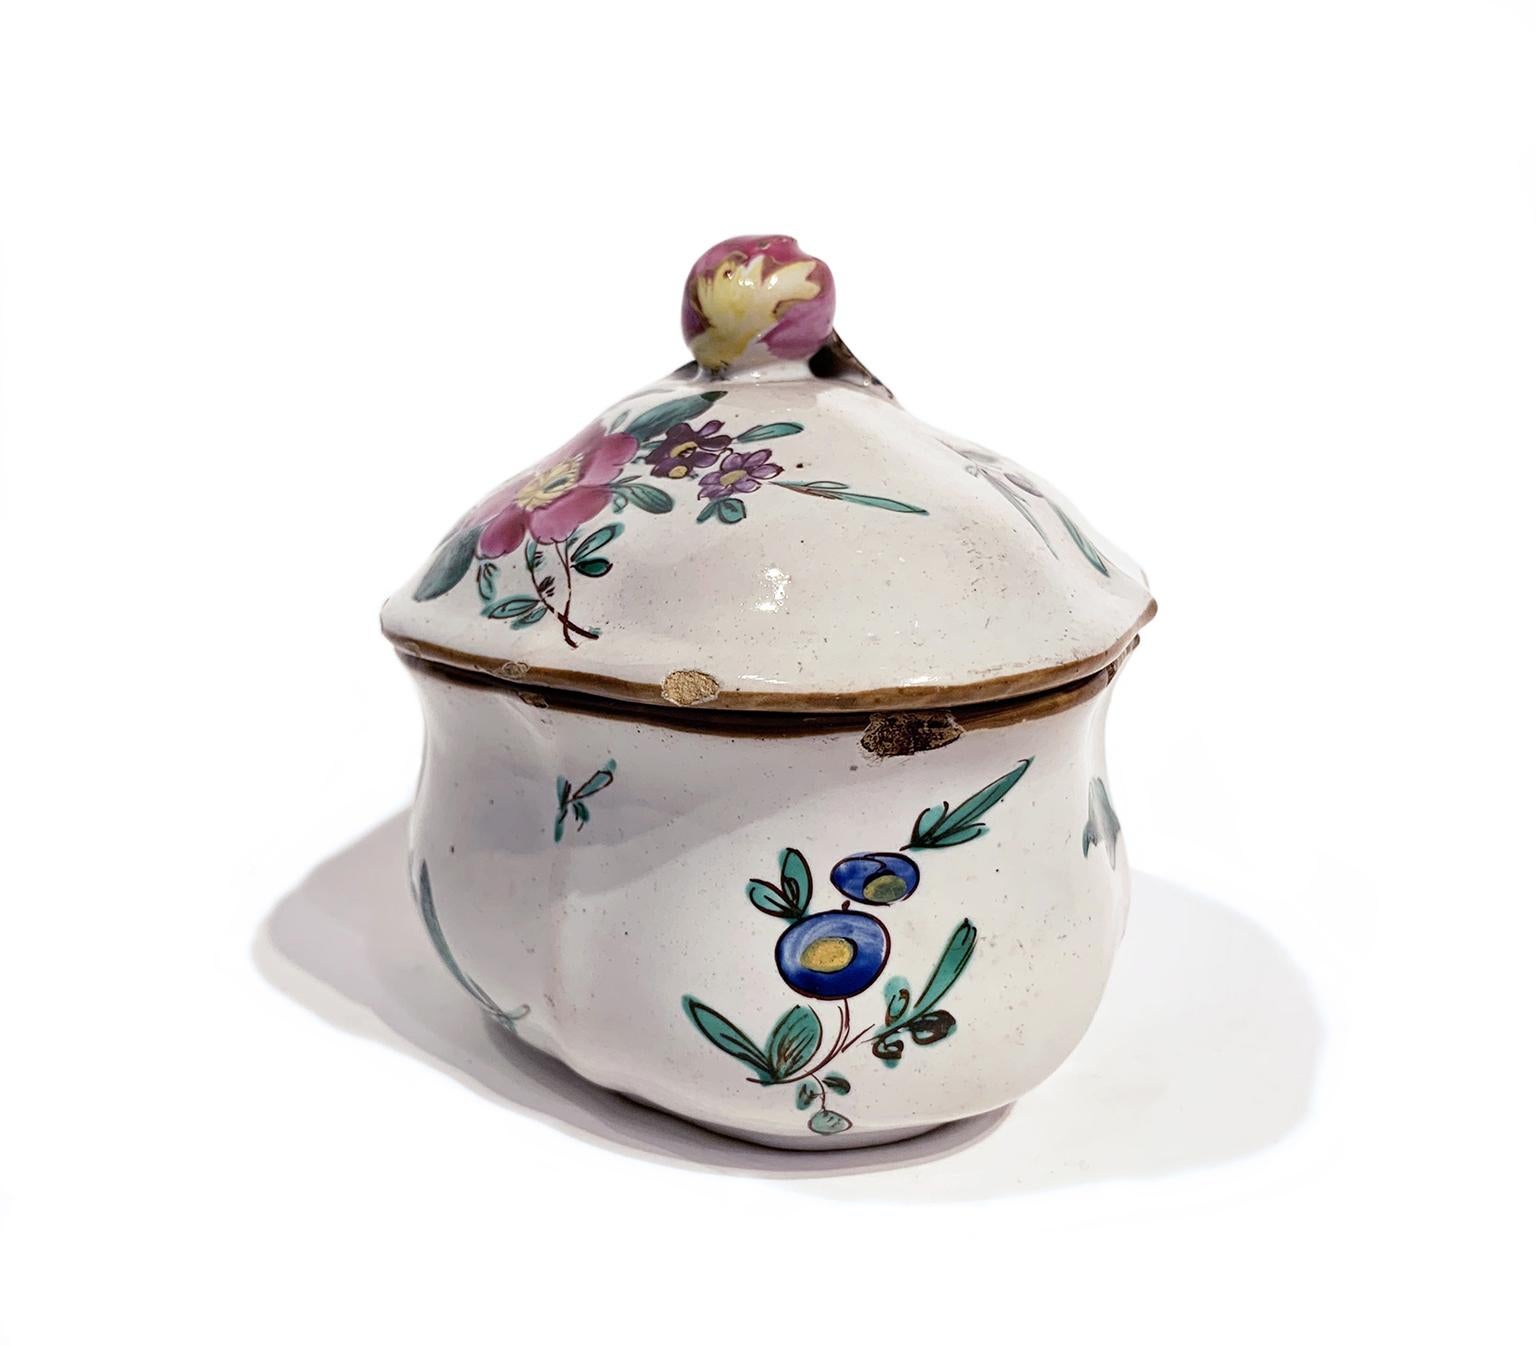 Maiolica sugar bowl
Antonio Ferretti Manufacture
Lodi, Circa 1770-1780
Maiolica polychrome decorated “a piccolo fuoco” (third fire).
It measures 3.54 x 4.52 x 3.54 in (9 x 11,5 x 9 cm)
Weight: 0.394 lb (0.179 kg)

State of conservation: small